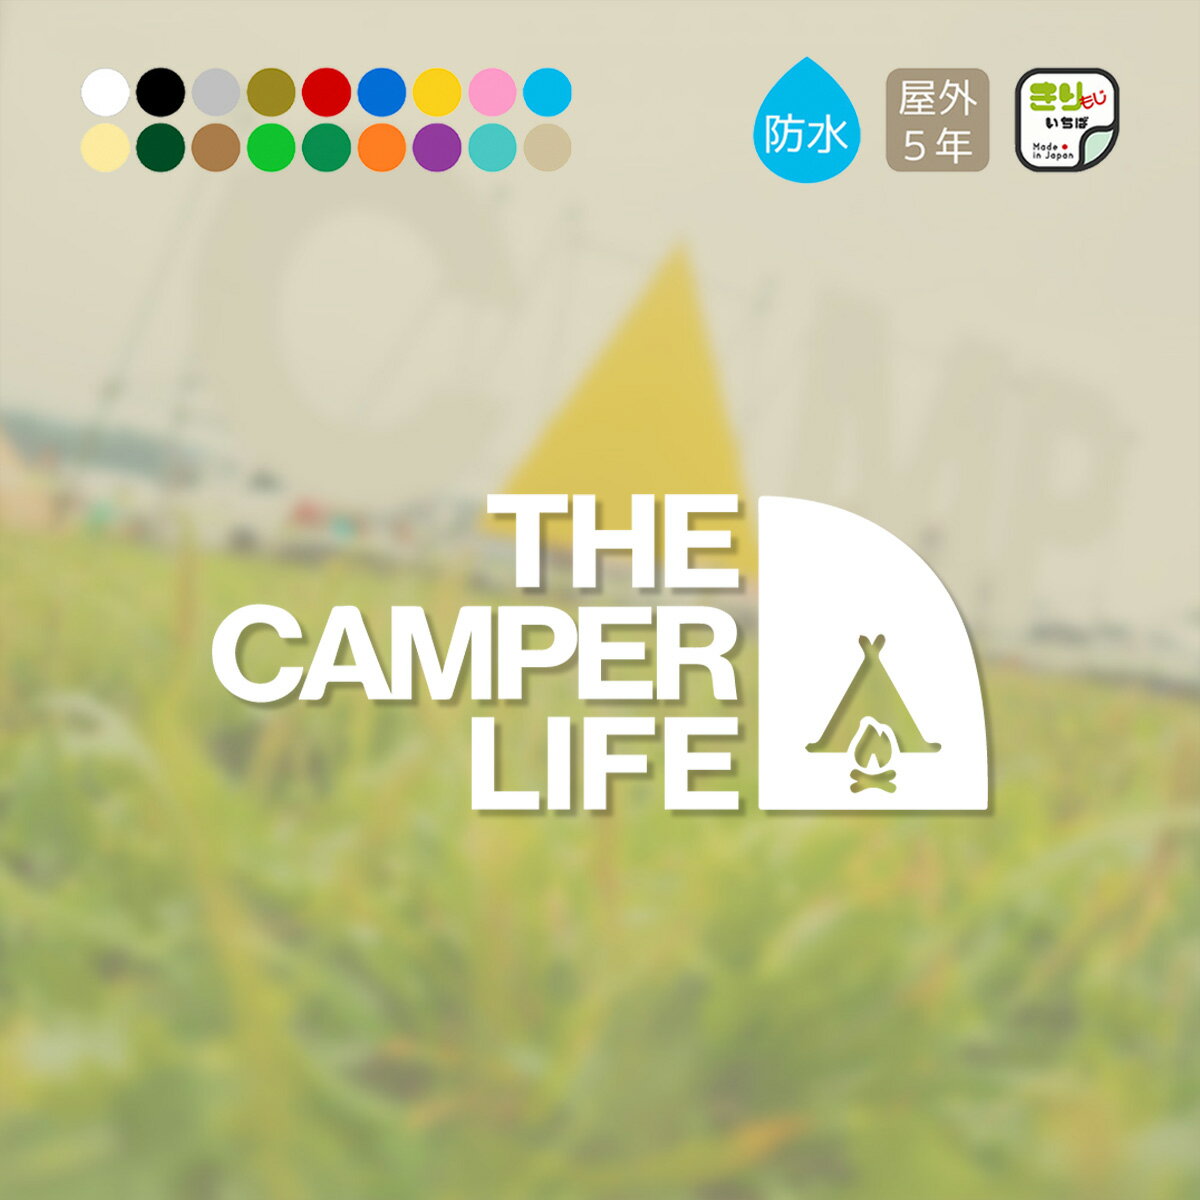 アウトドア キャンプ ステッカー おしゃれ 車 THE CAMPER LIFE キャンパー カッティングステッカー 防水 シール CAMP ソロ camping キャンピング キャンプ用品 カーステッカー シンプル レトロ 山 炎 マウンテン きりもじいちば